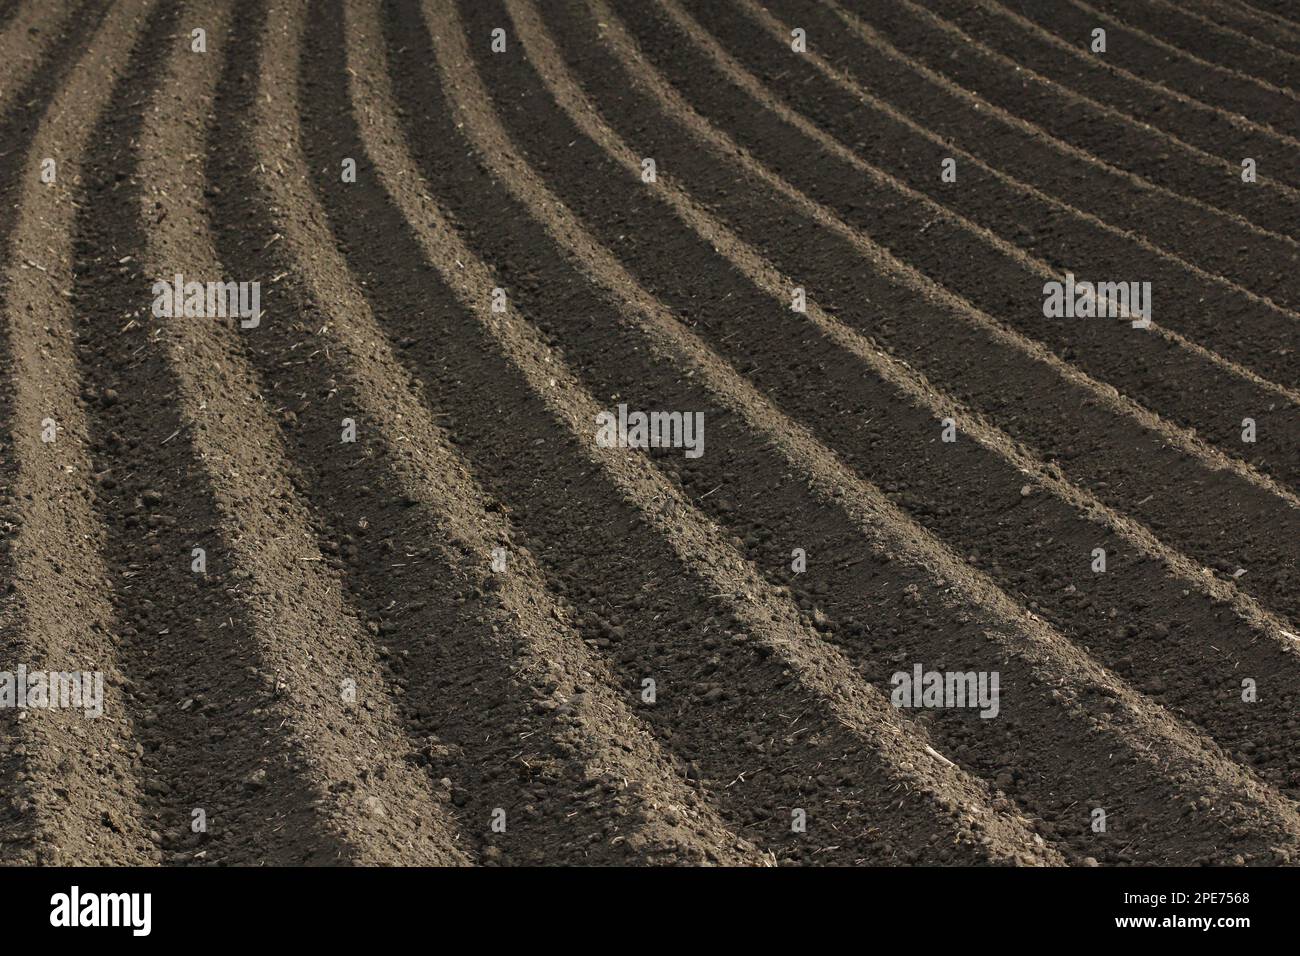 Frisch gepflügter fruchtbarer Boden als Grundlage für einen funktionellen landwirtschaftlichen Anbau Stockfoto